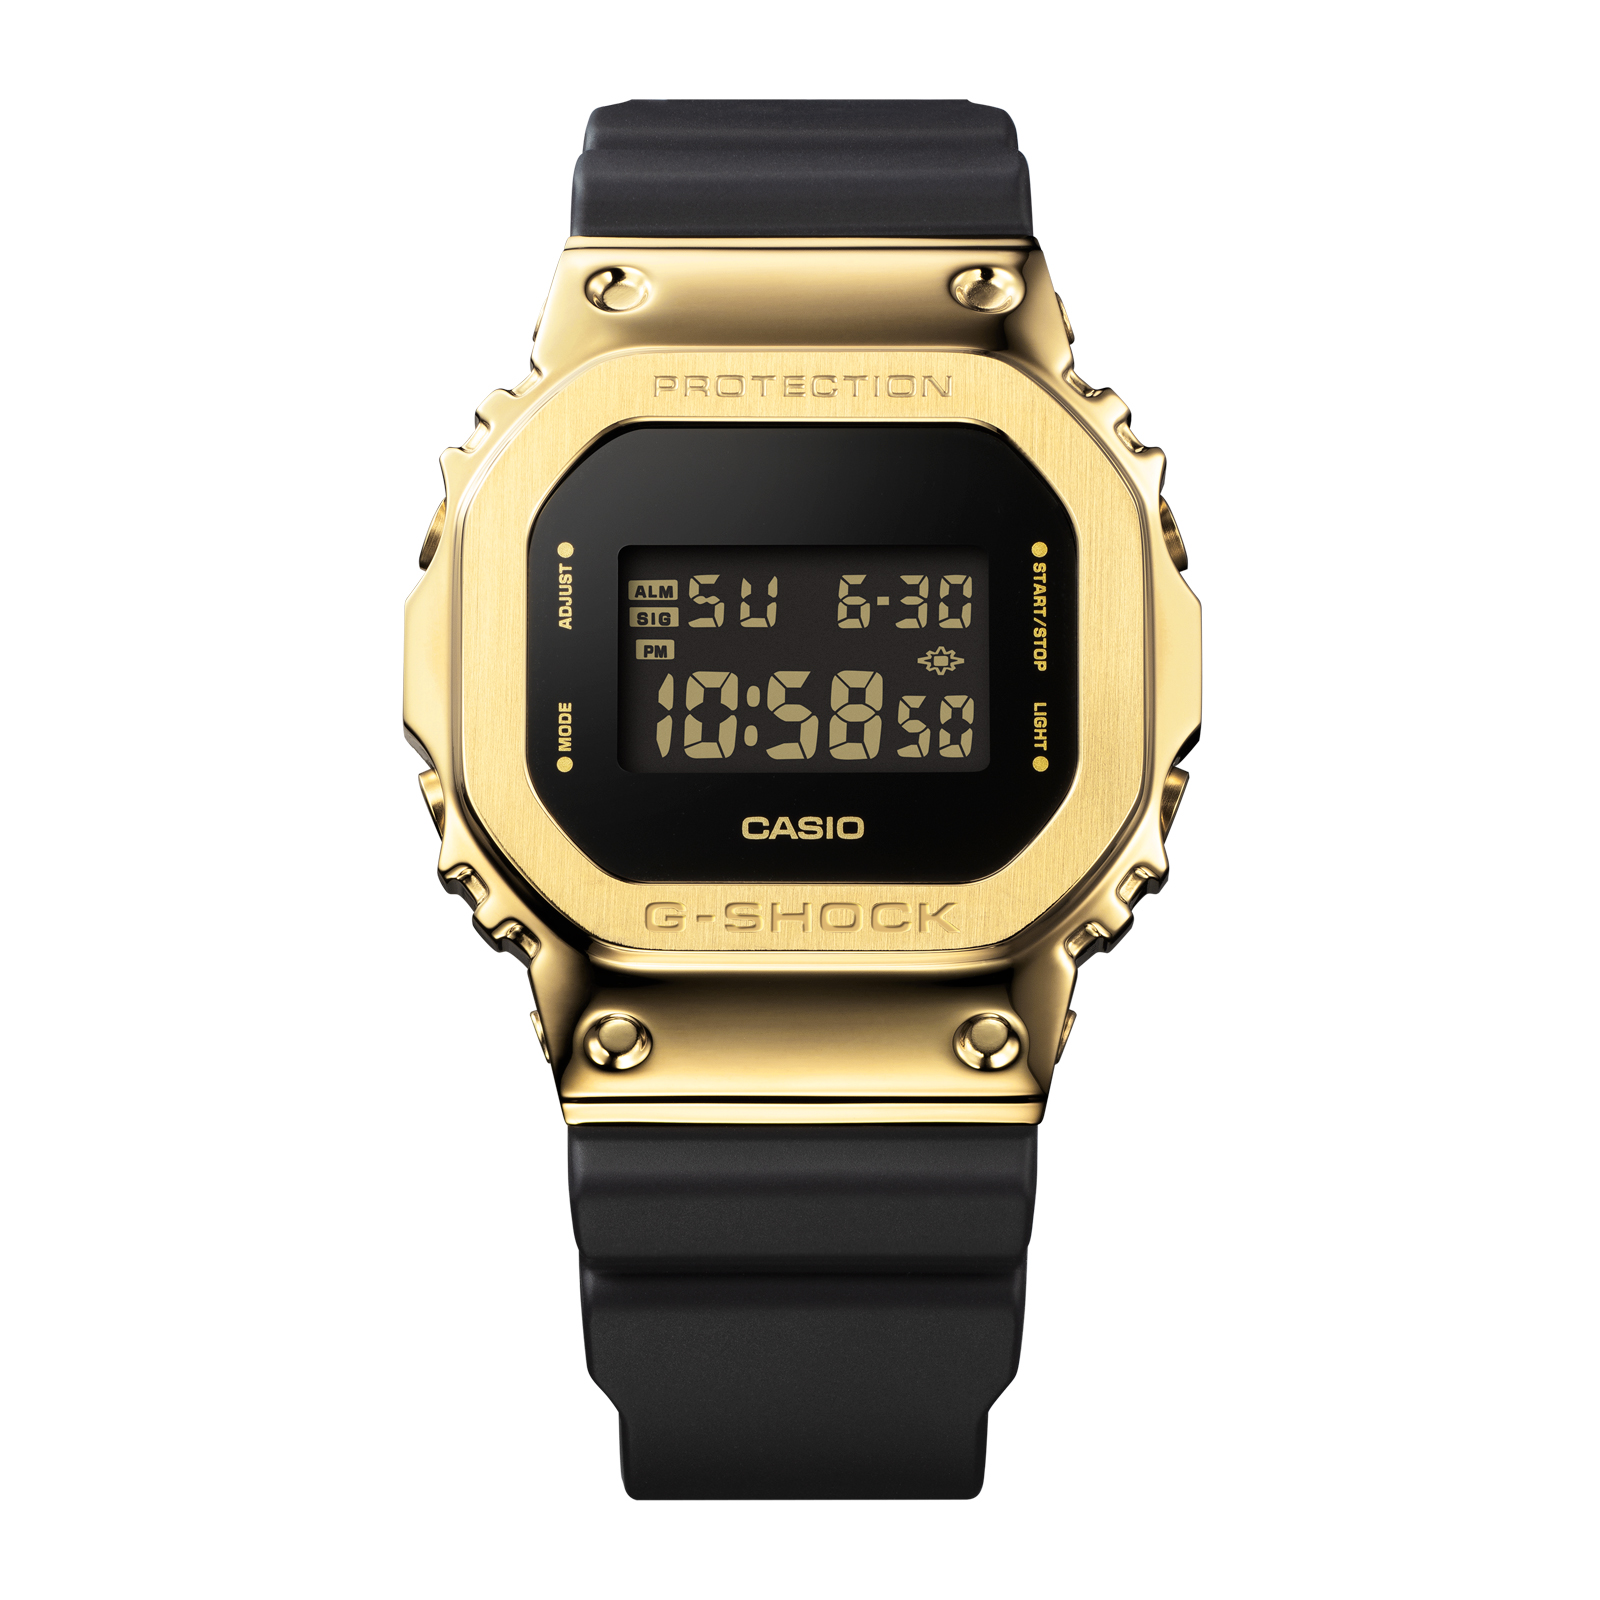 Reloj G-SHOCK GM-5600G-9D Resina/Acero Hombre Dorado